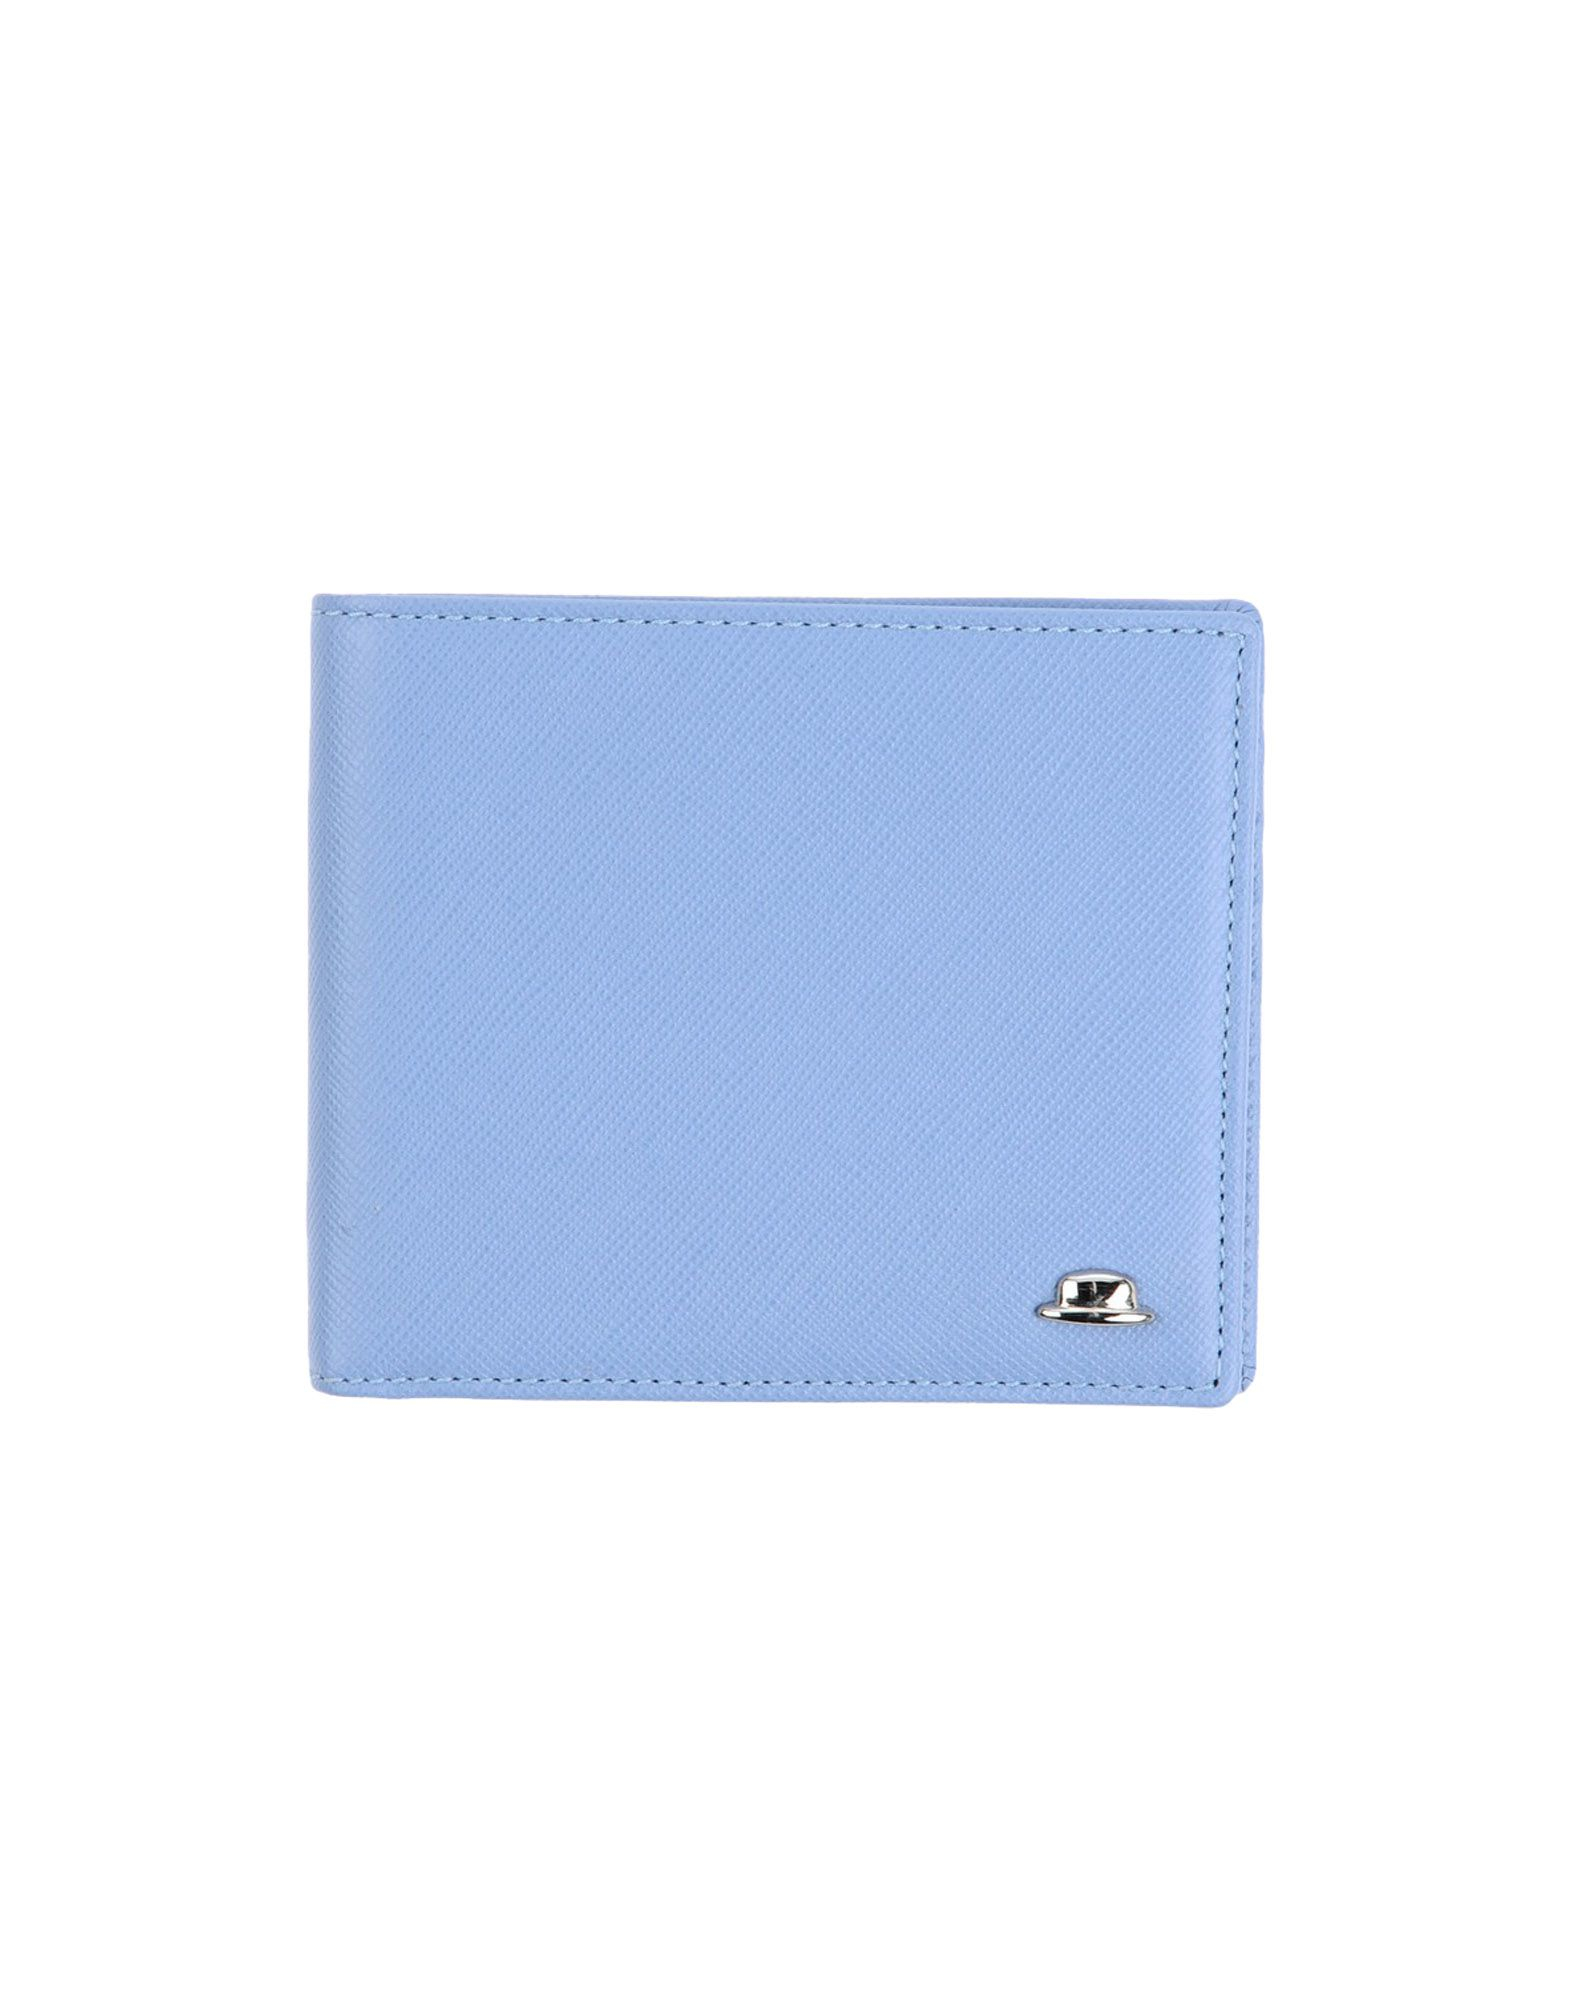 Hackett Wallet in Pastel Blue (Blue) for Men - Lyst